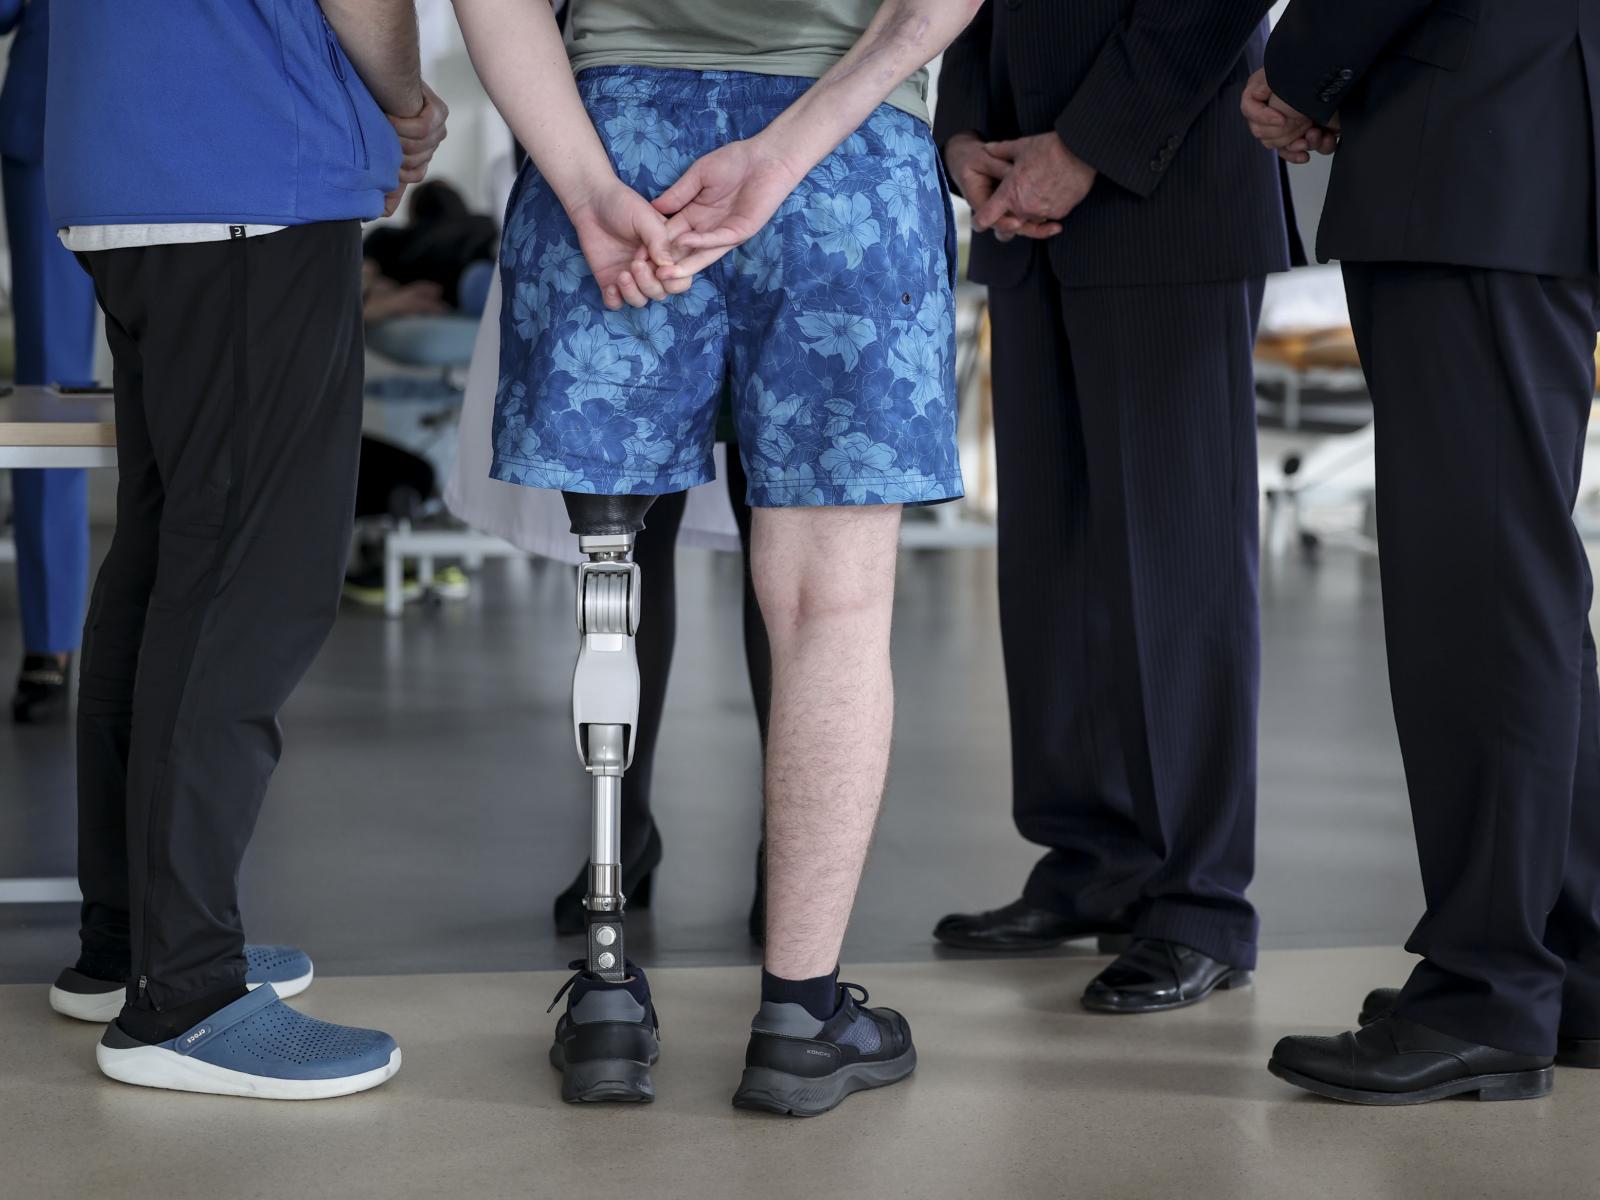 Vue sur un patient avec une prothèse de jambe